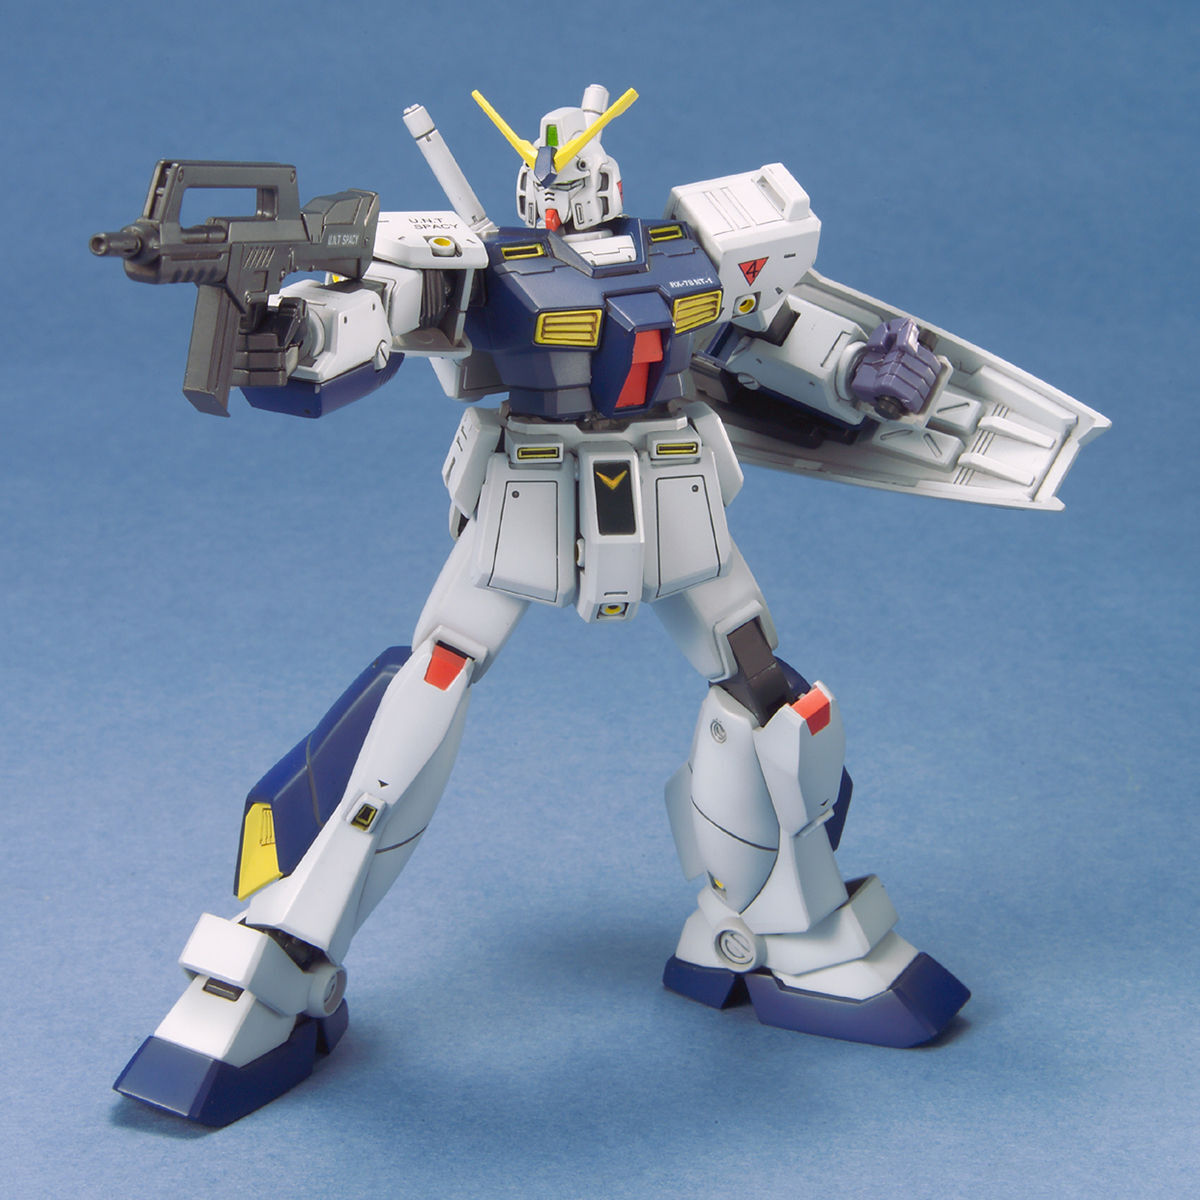 1/144 HGUC Gundam Nt-1